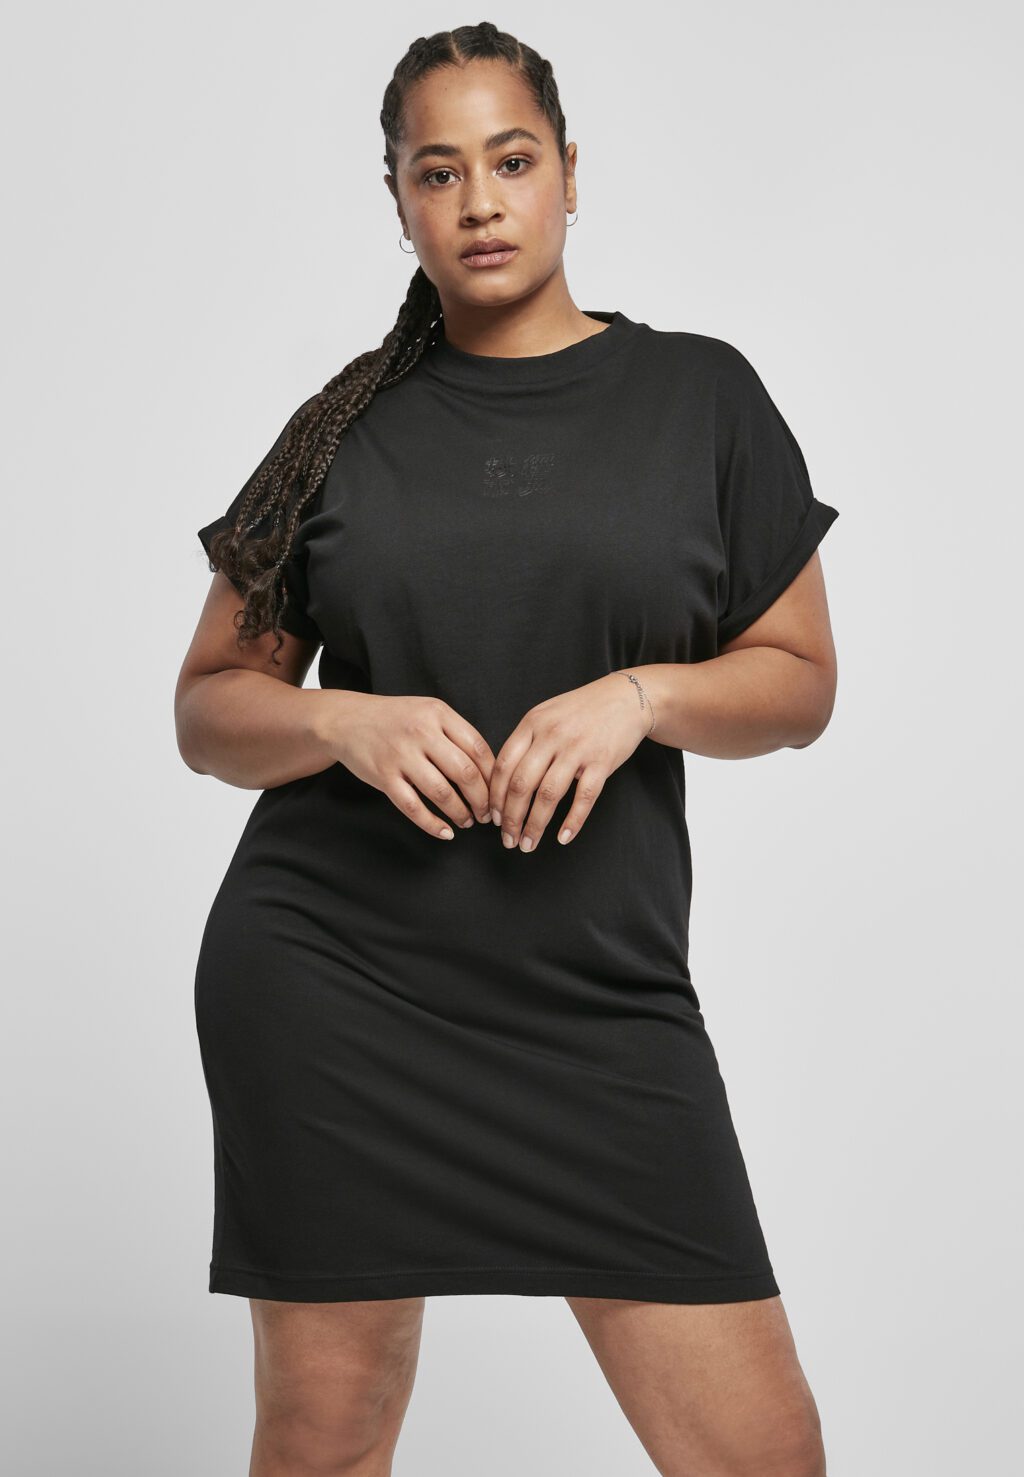 Urban Classics Ladies Cut On Sleeve Printed Tee Dress black/black TB4089